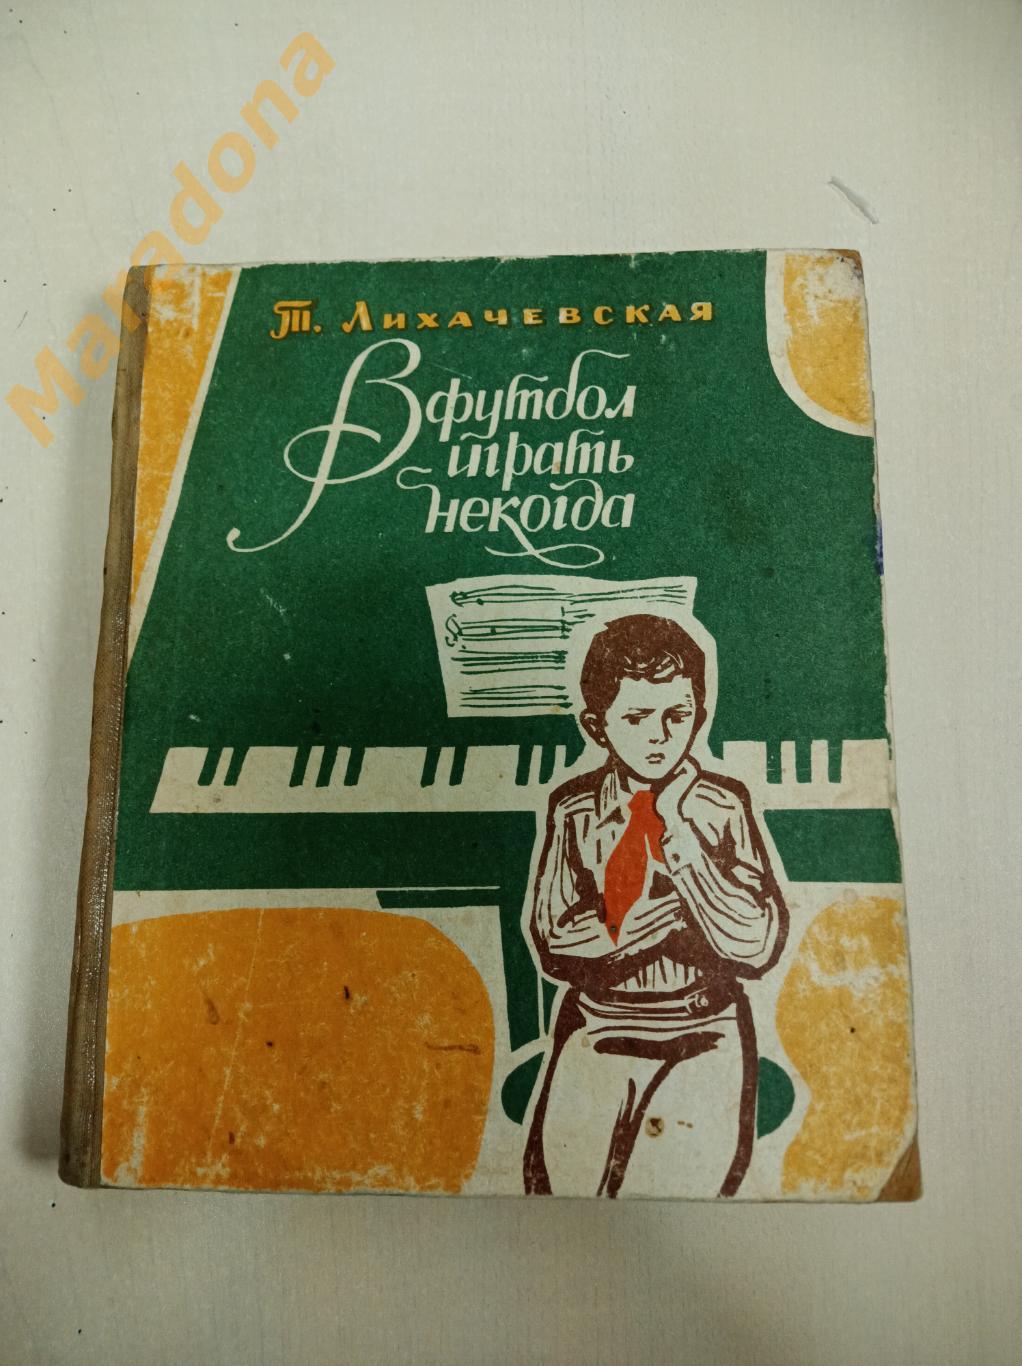 Т.Лихачевская В футбол играть некогда Свердловск 1970